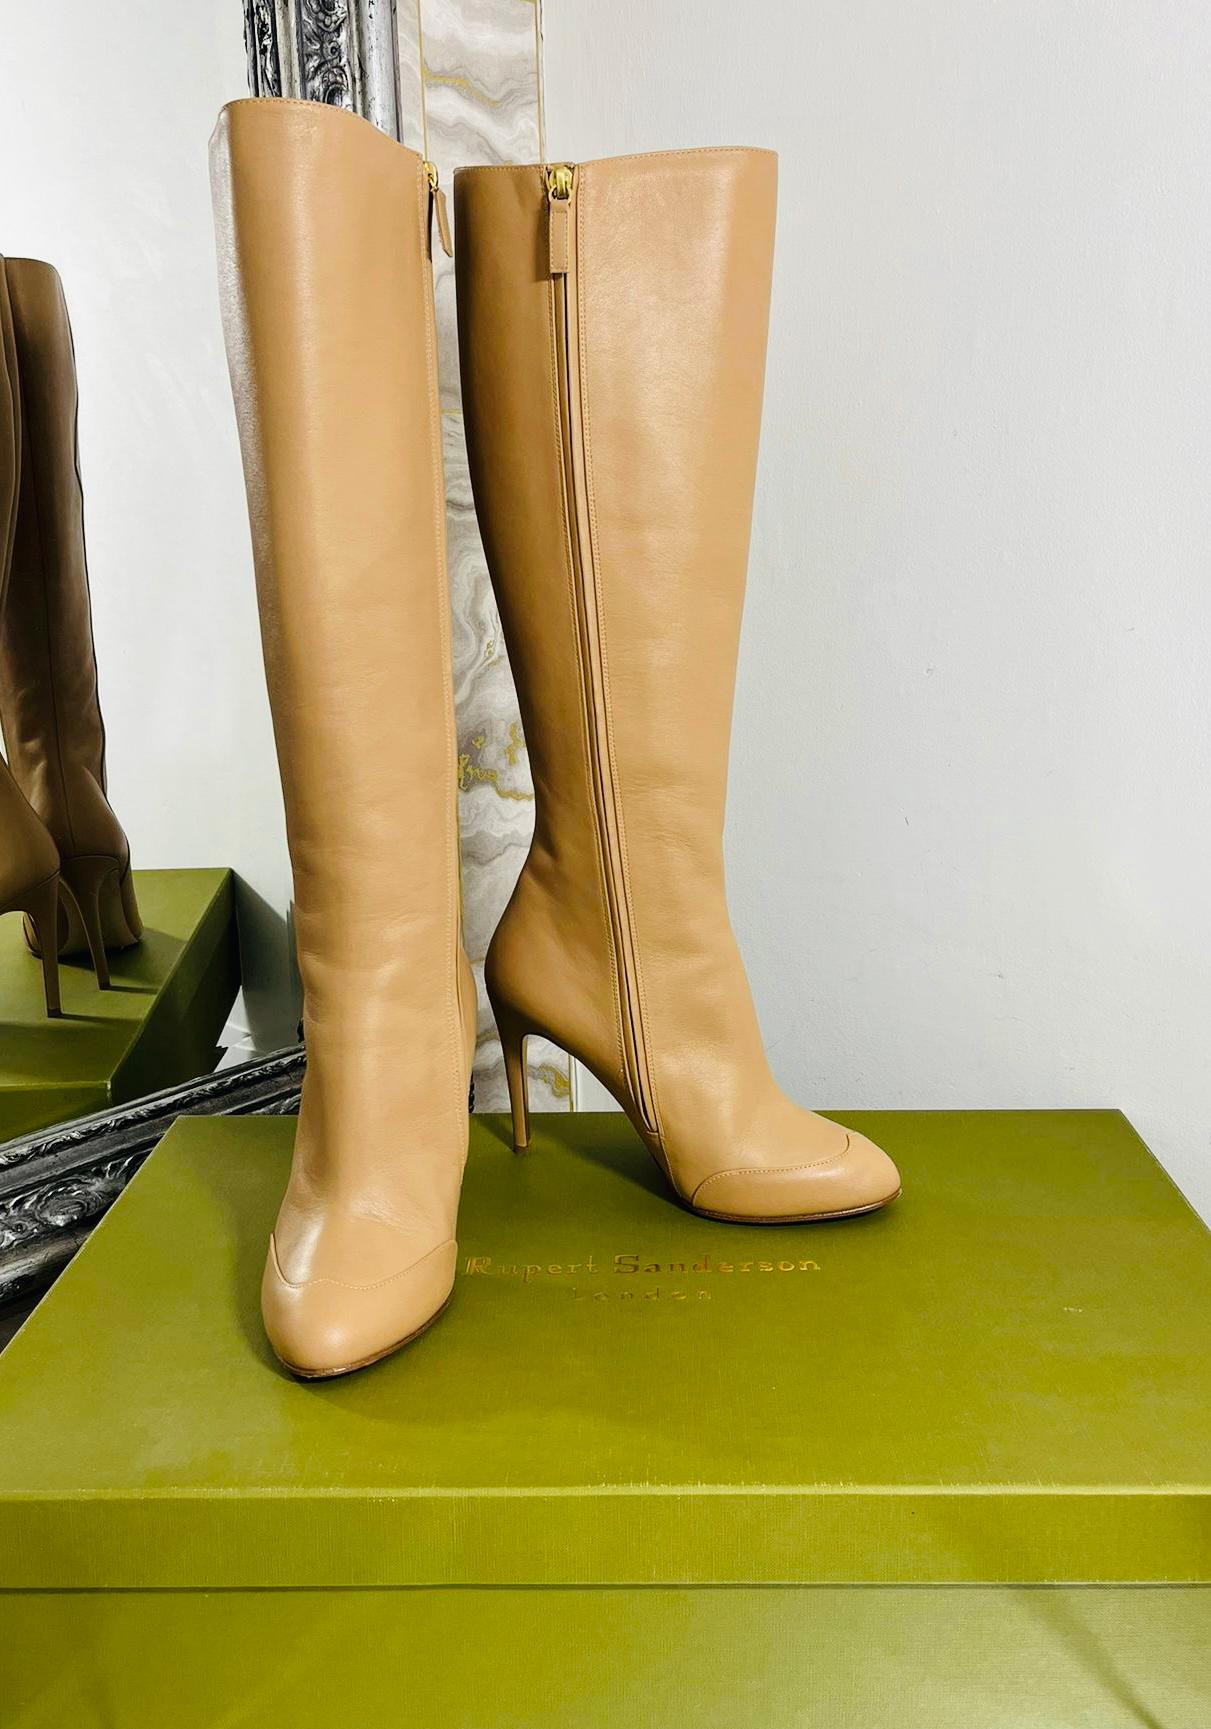 Rupert Sanderson kniehohe Stiefel aus Kalbsleder

Beigefarbene Stiefel mit mandelförmiger Zehenpartie und Stilettoabsatz.

Mit dekorativen, tonalen Nähten an der Seite und den Zehen.

Mit Reißverschluss an der Seite. Rrp £895

Größe - 38.5

Zustand